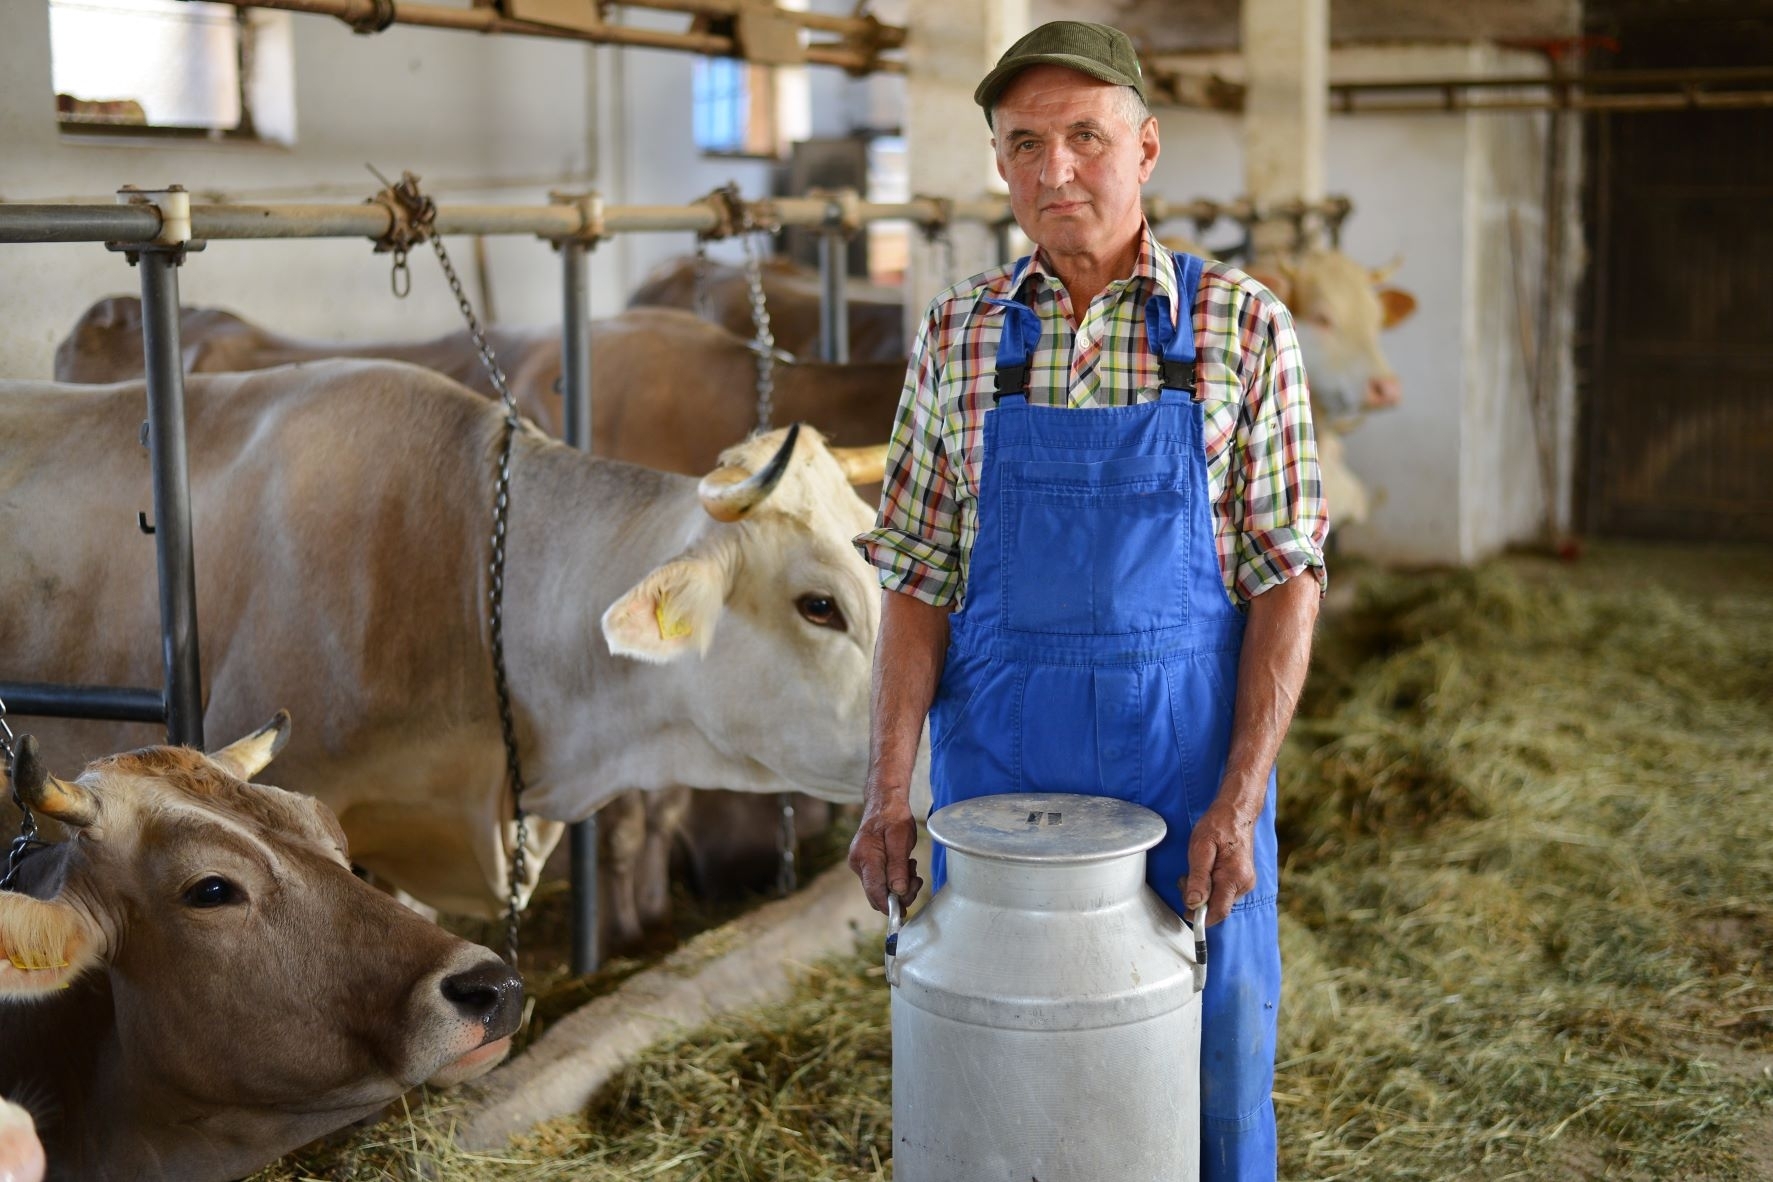 Gyventojai kviečiami teikti pasiūlymus dėl žalio pieno pirkimo ir pardavimo sąlygų